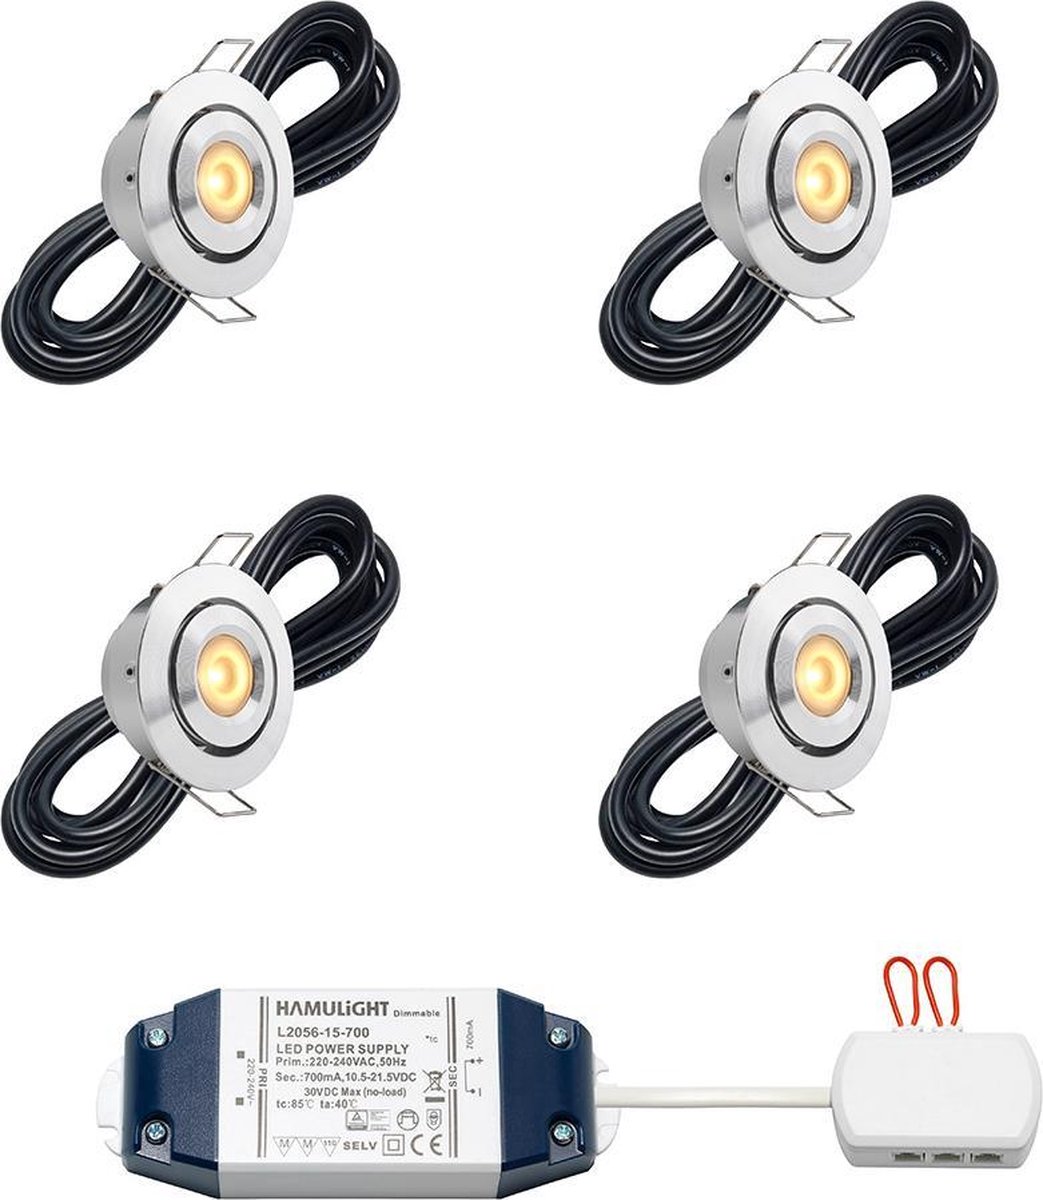 LED inbouwspot Toledo bas inclusief trafo - inbouwspots / downlights / plafondspots / led spot / 3W / dimbaar / warm wit / rond / 230V / IP44 / Kantelbaar - set van 4 stuks